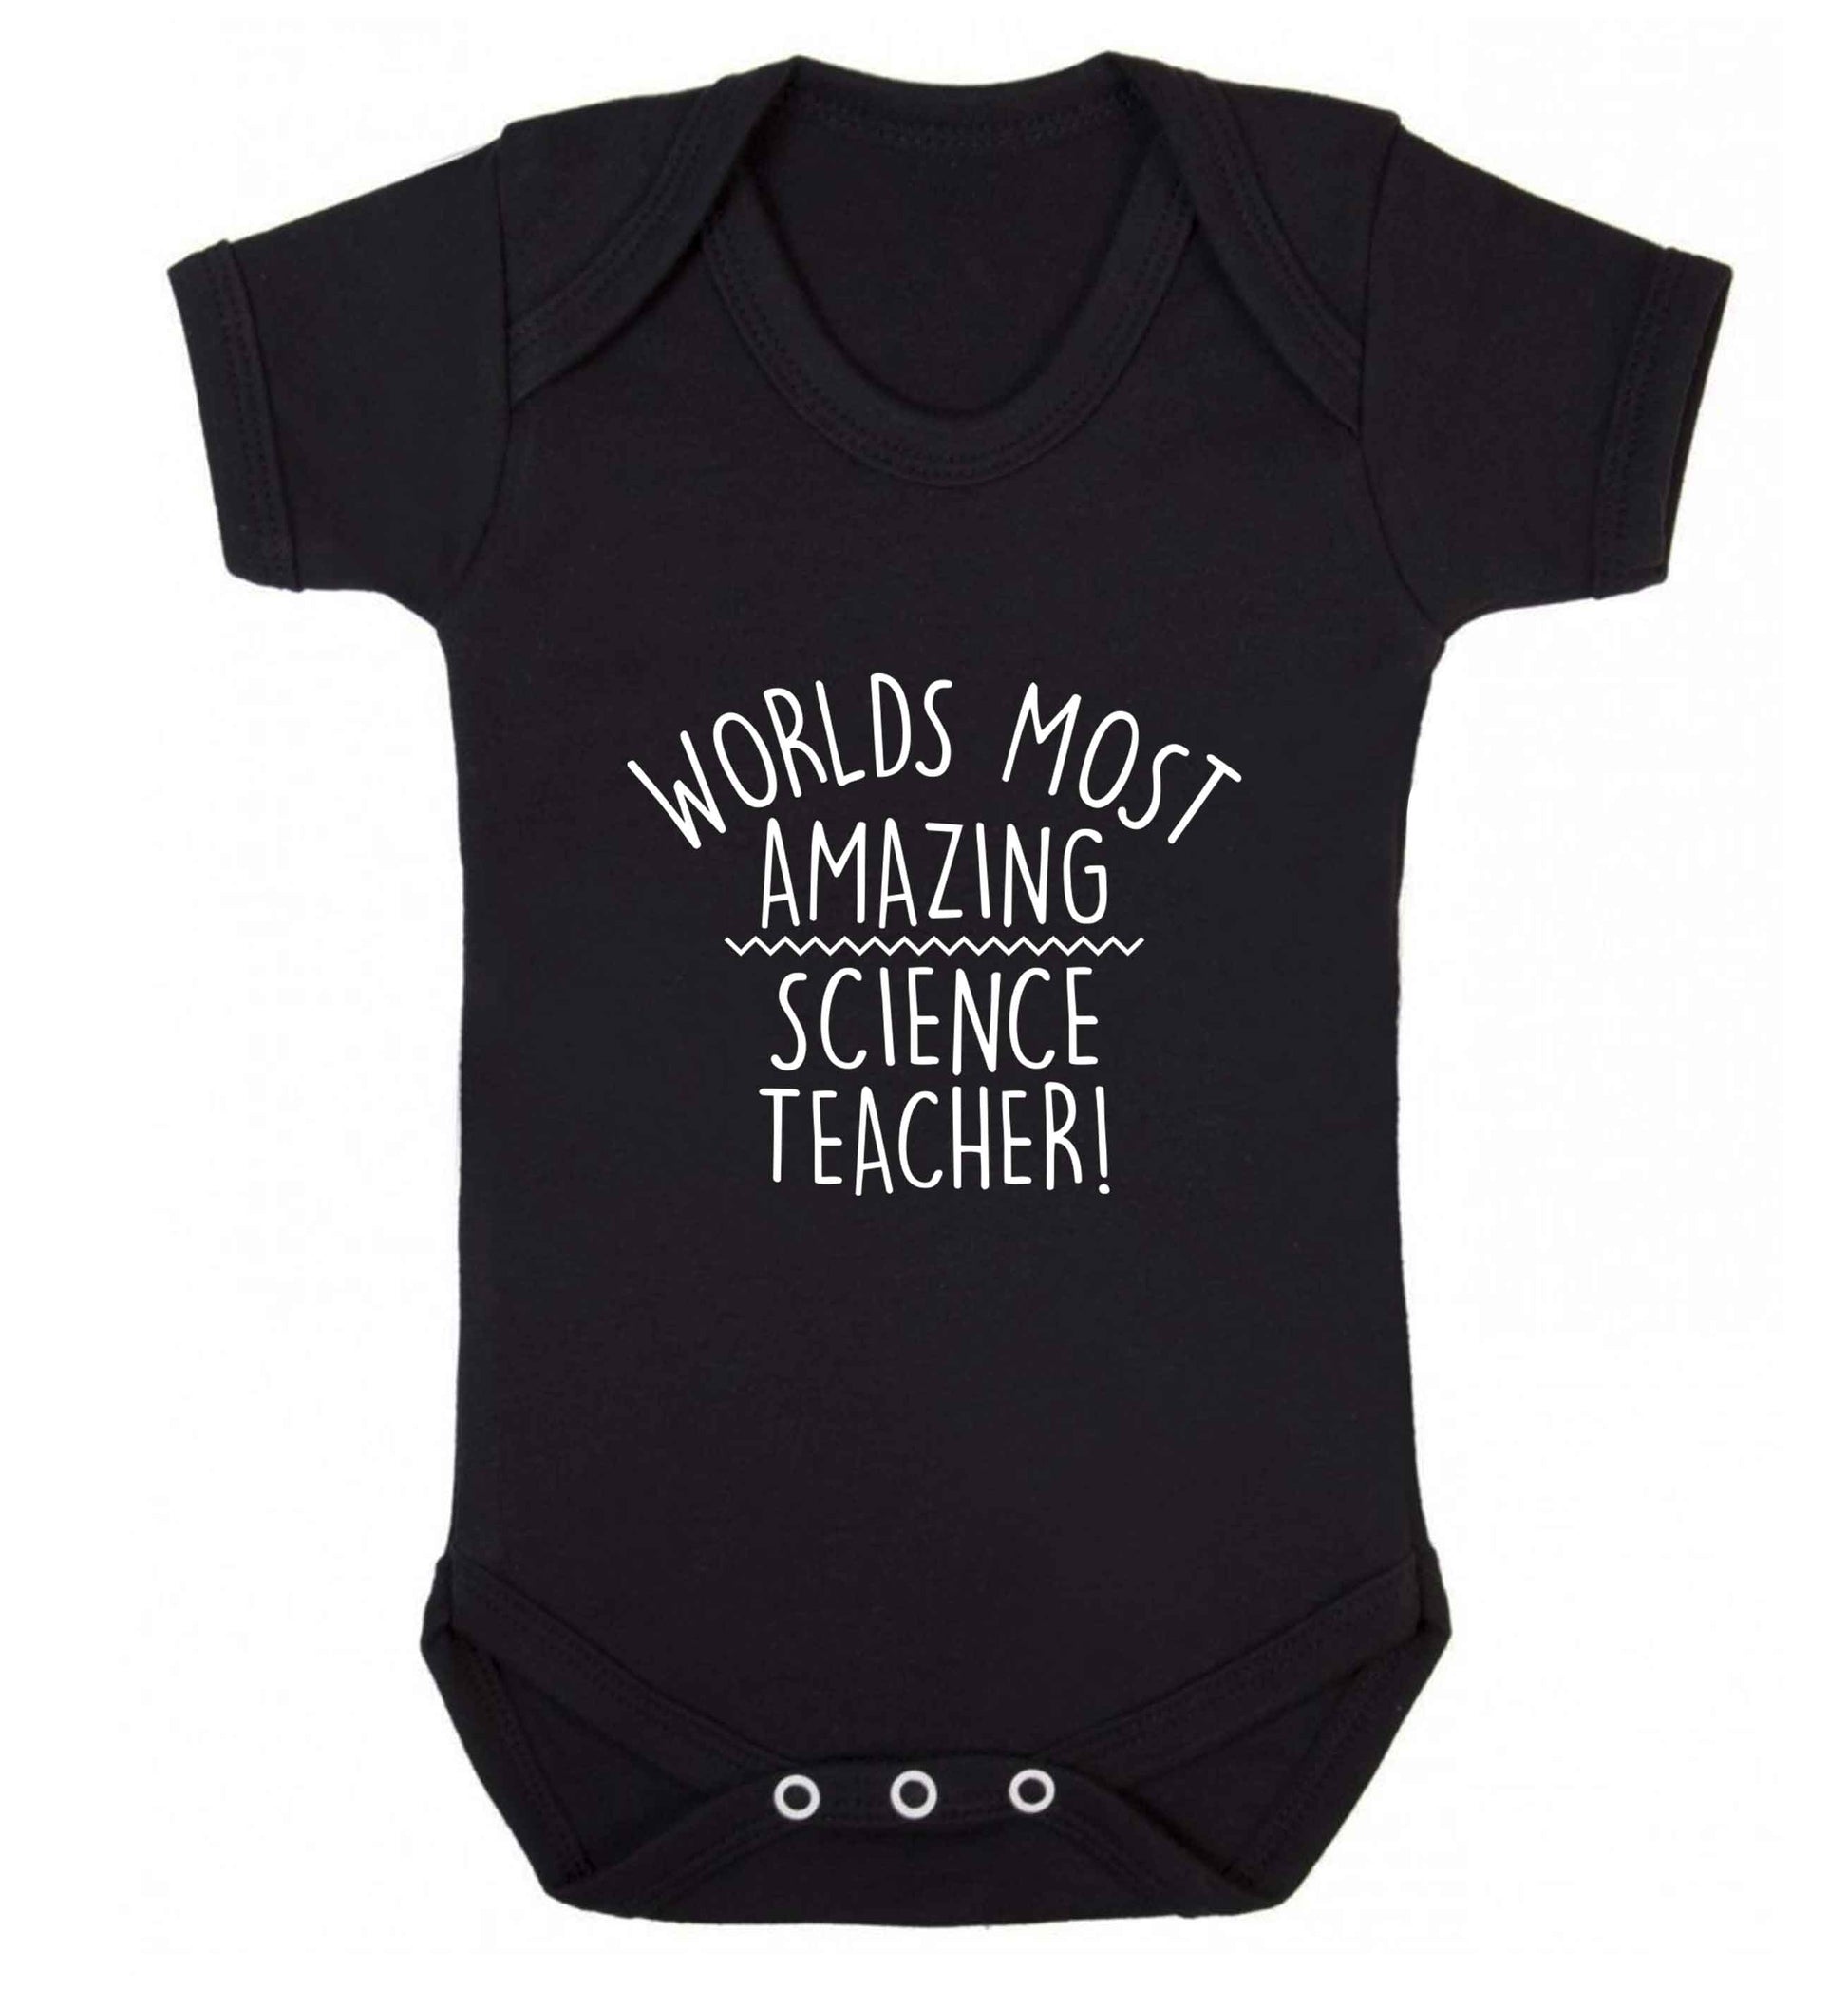 Worlds most amazing science teacher baby vest black 18-24 months